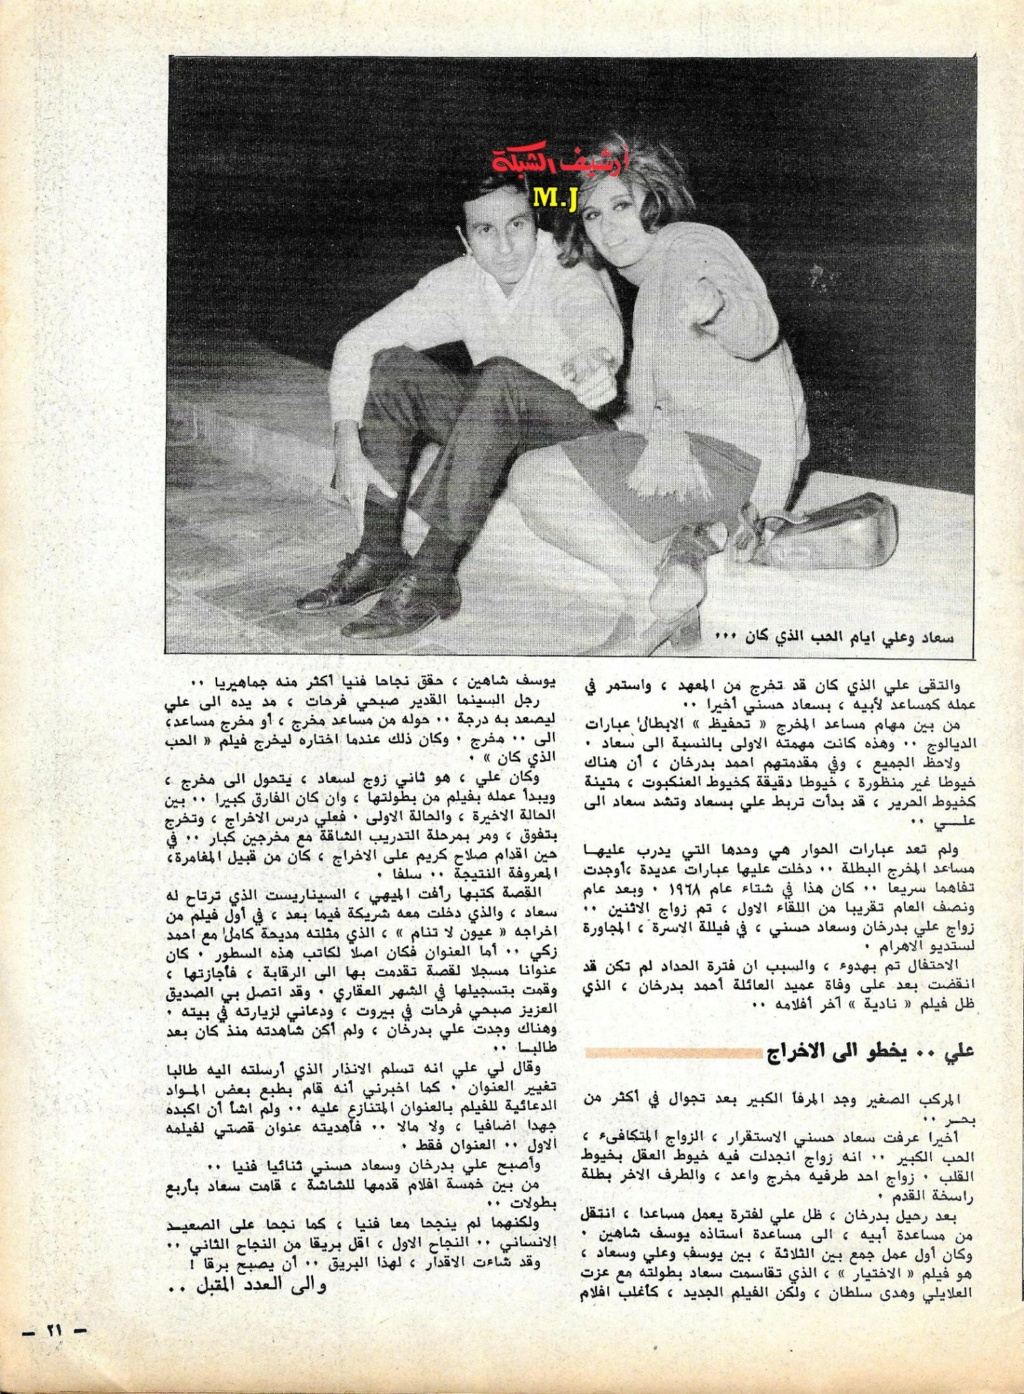 1981 - مقال صحفي : سعاد حسني وعلي بدرخان وقصة الحب الذي كان 1981 م 810